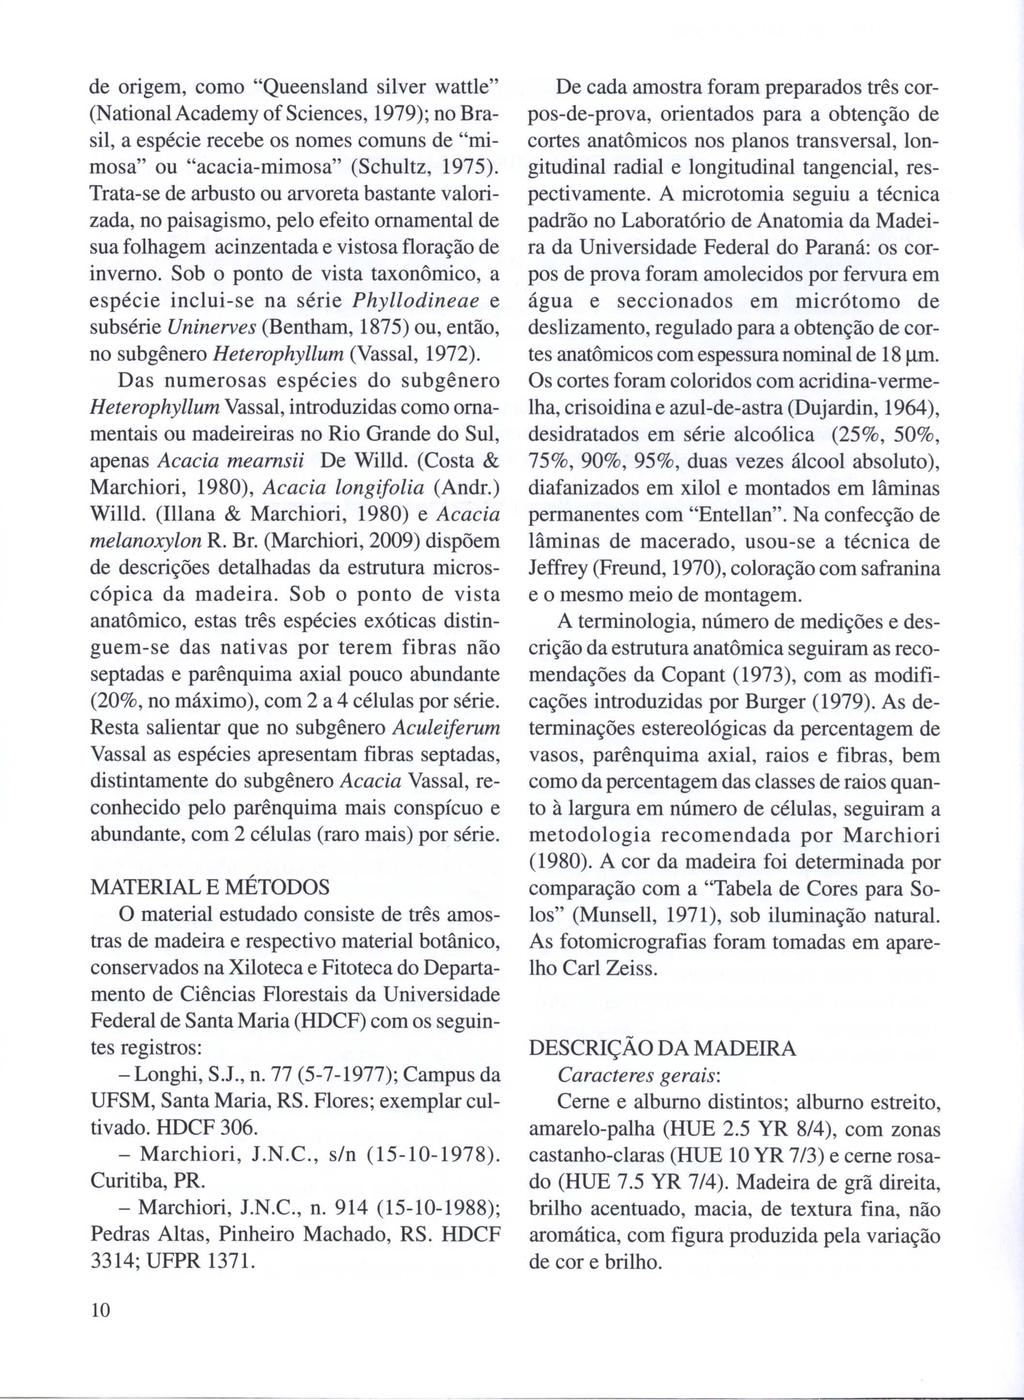 de origem, como "Queensland silver wattle" (National Academy of Sciences, 1979); no Brasil, a espécie recebe os nomes comuns de "mimosa" ou "acacia-mimosa" (Schultz, 1975).